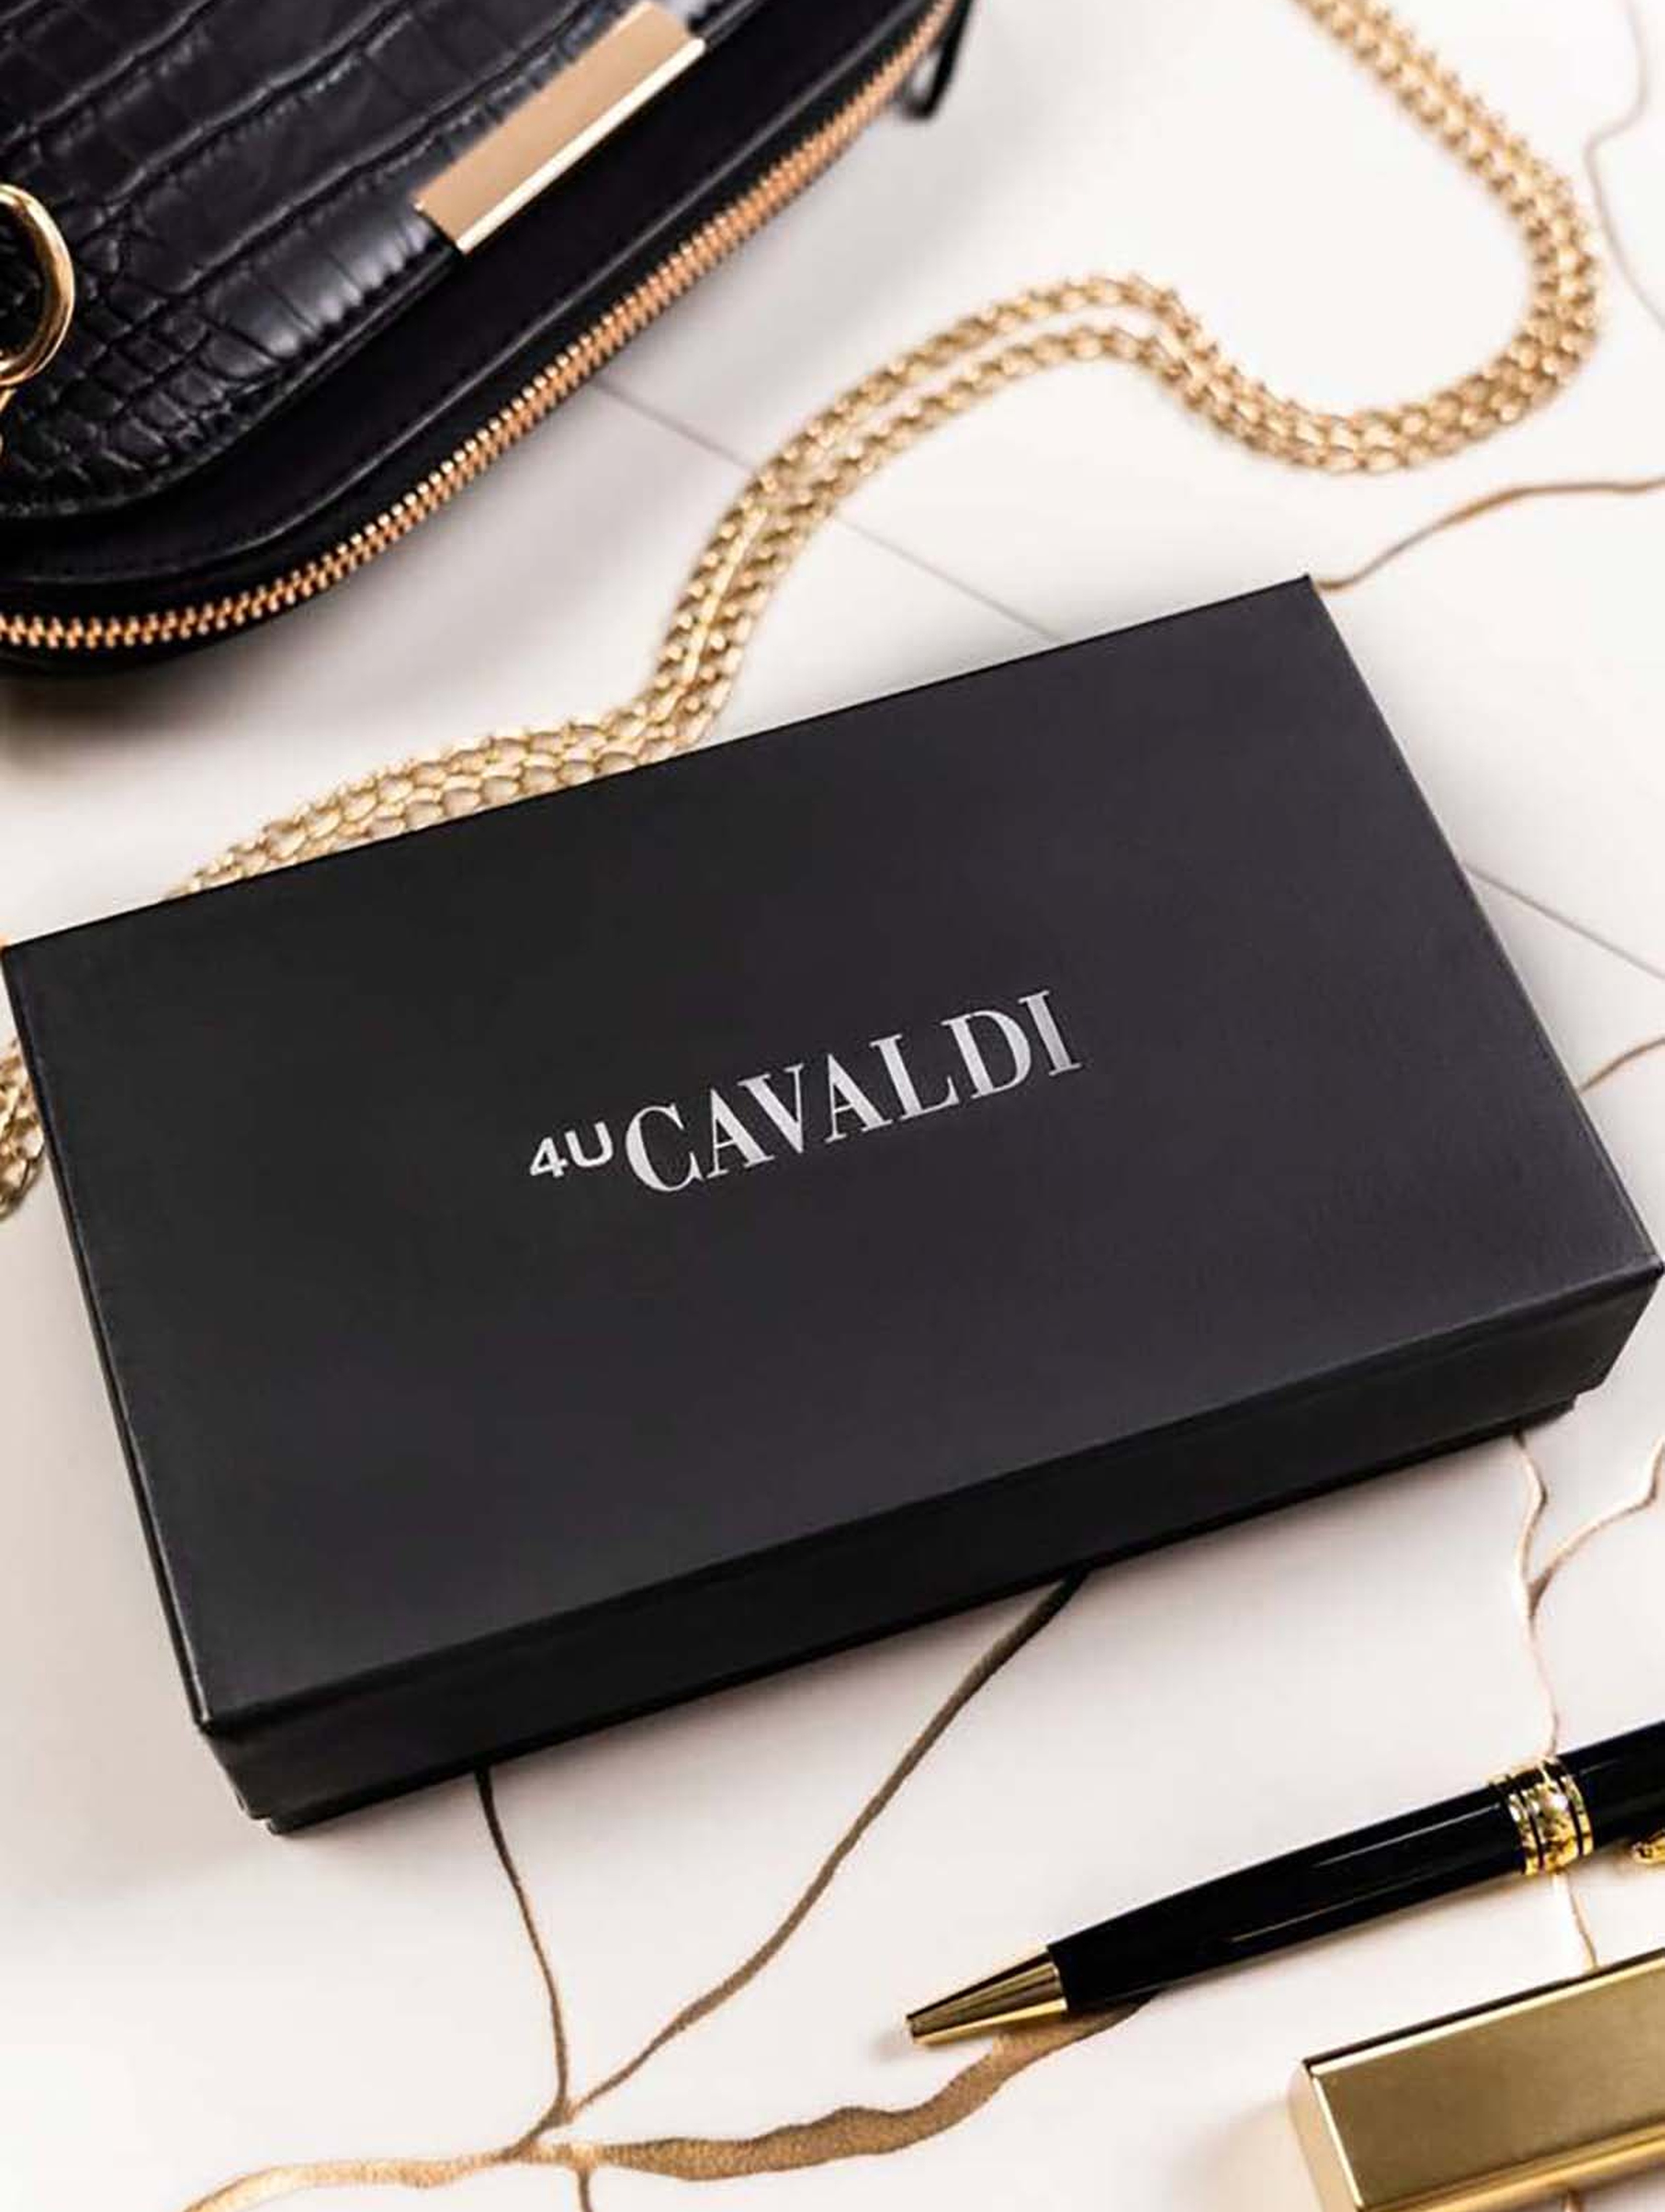 Skórzany portfel damski na zatrzask - 4U Cavaldi